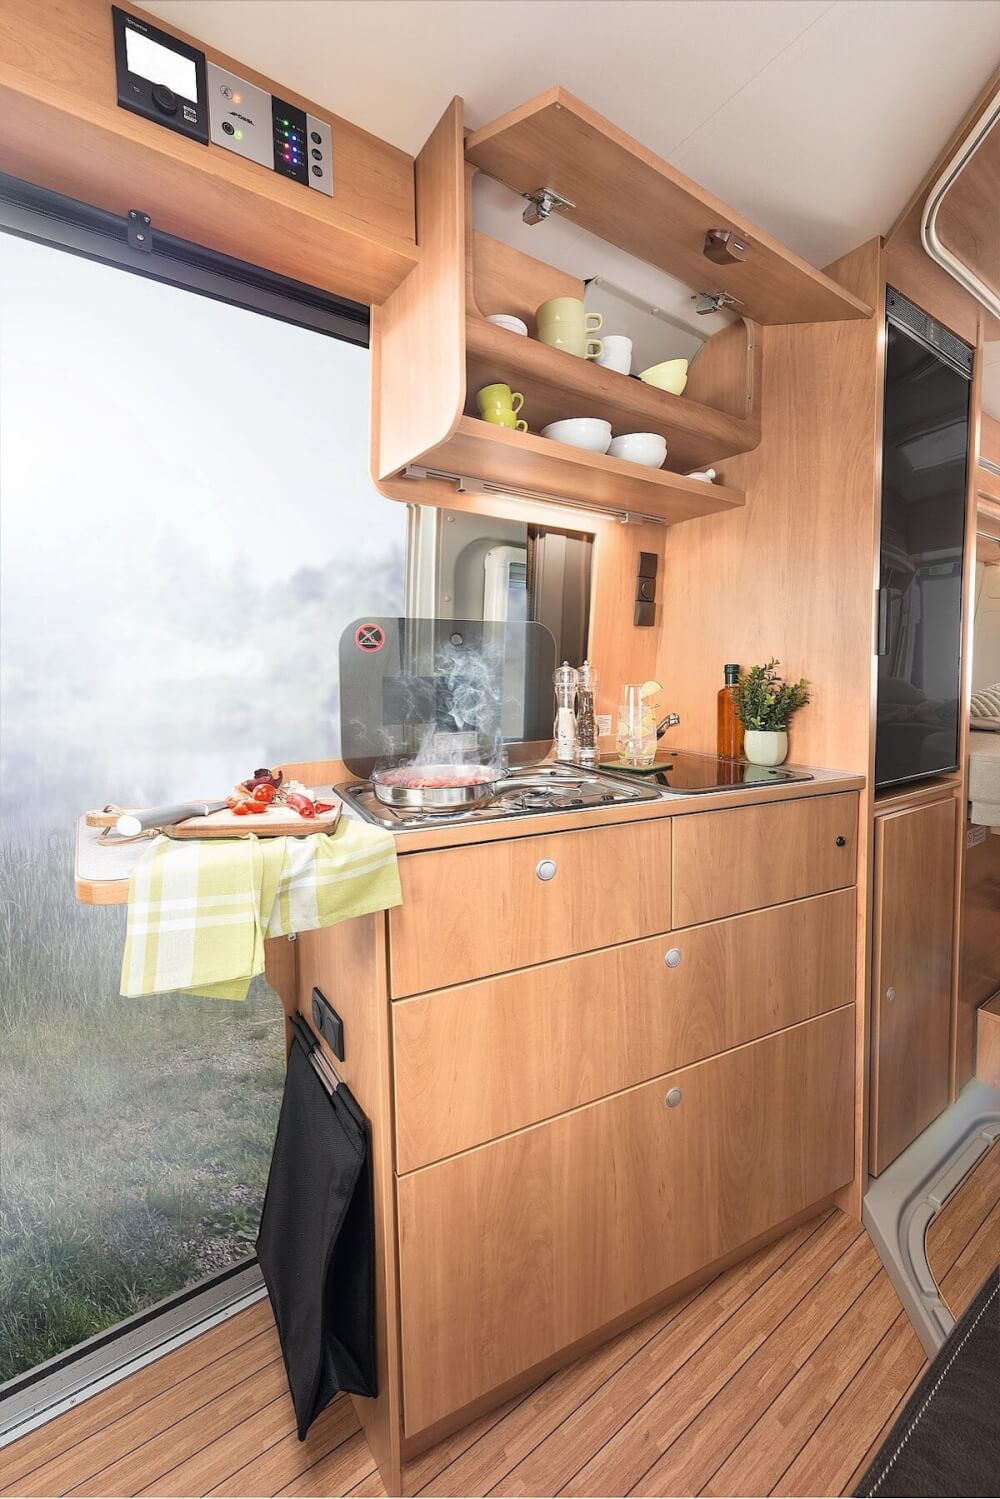 Pössl Roadcruiser 640 (Fiat) Kastenwagen 2022 Küche